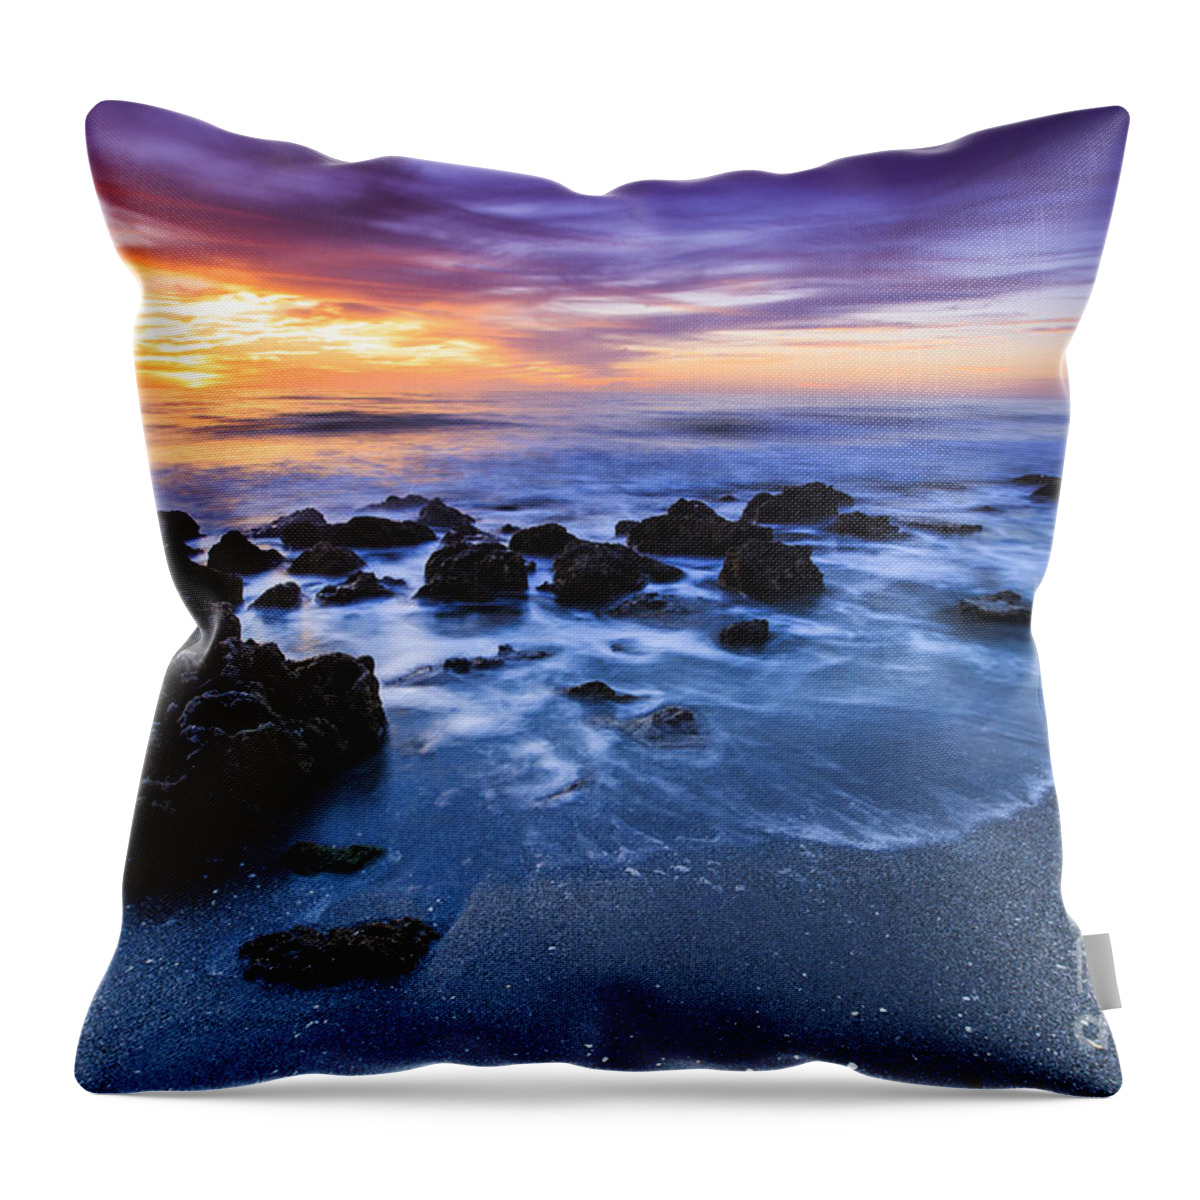 Casperson Beach Throw Pillow featuring the photograph Casperson Beach Sunset 2 by Ben Graham